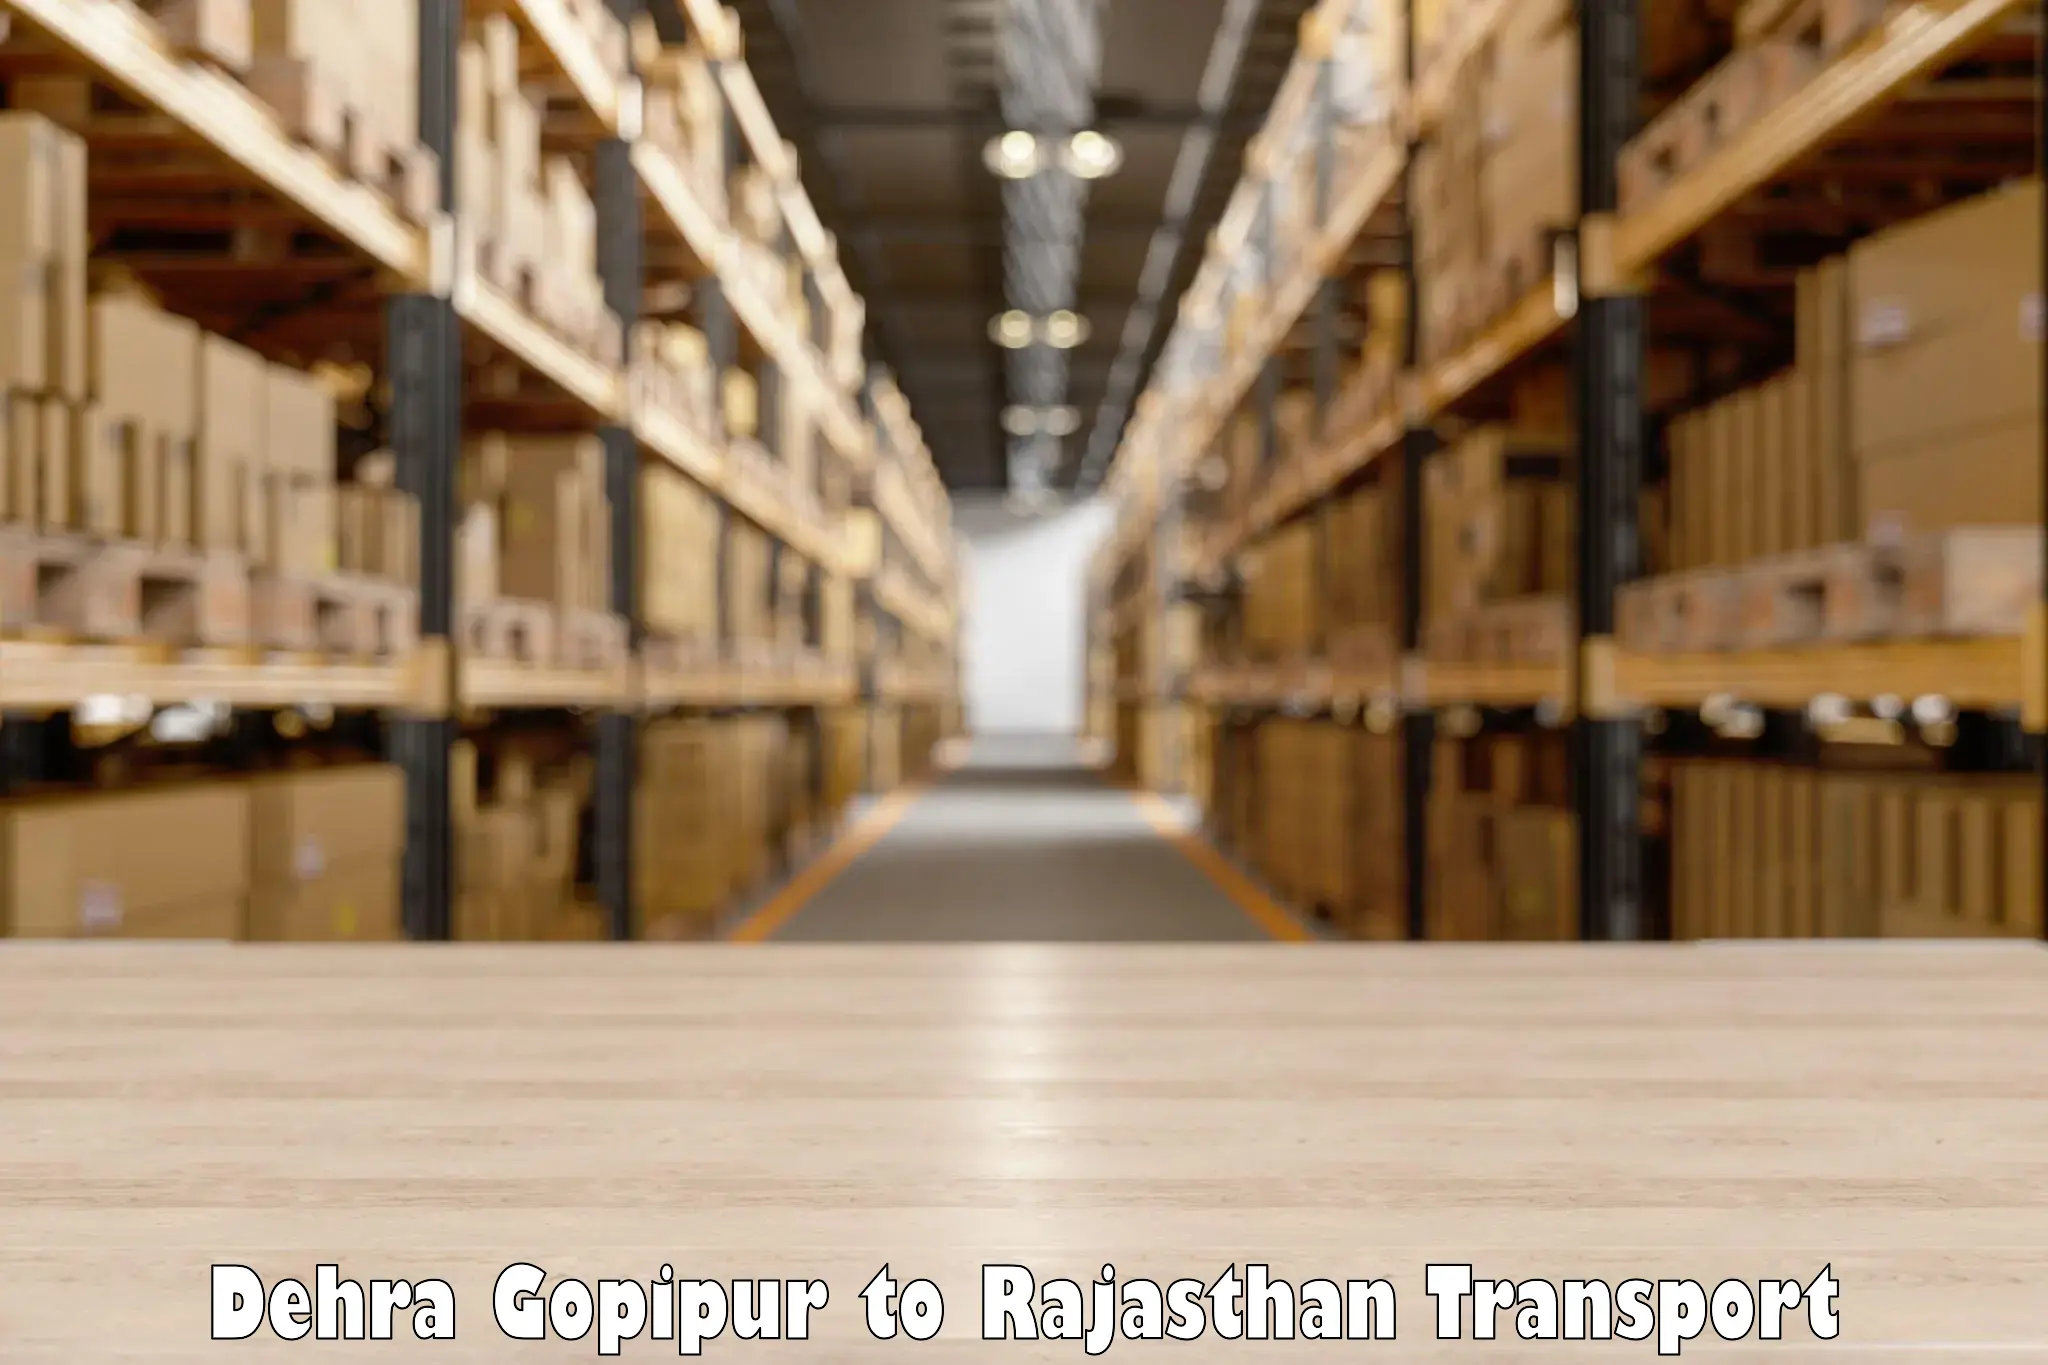 Cargo transportation services Dehra Gopipur to Bhatewar